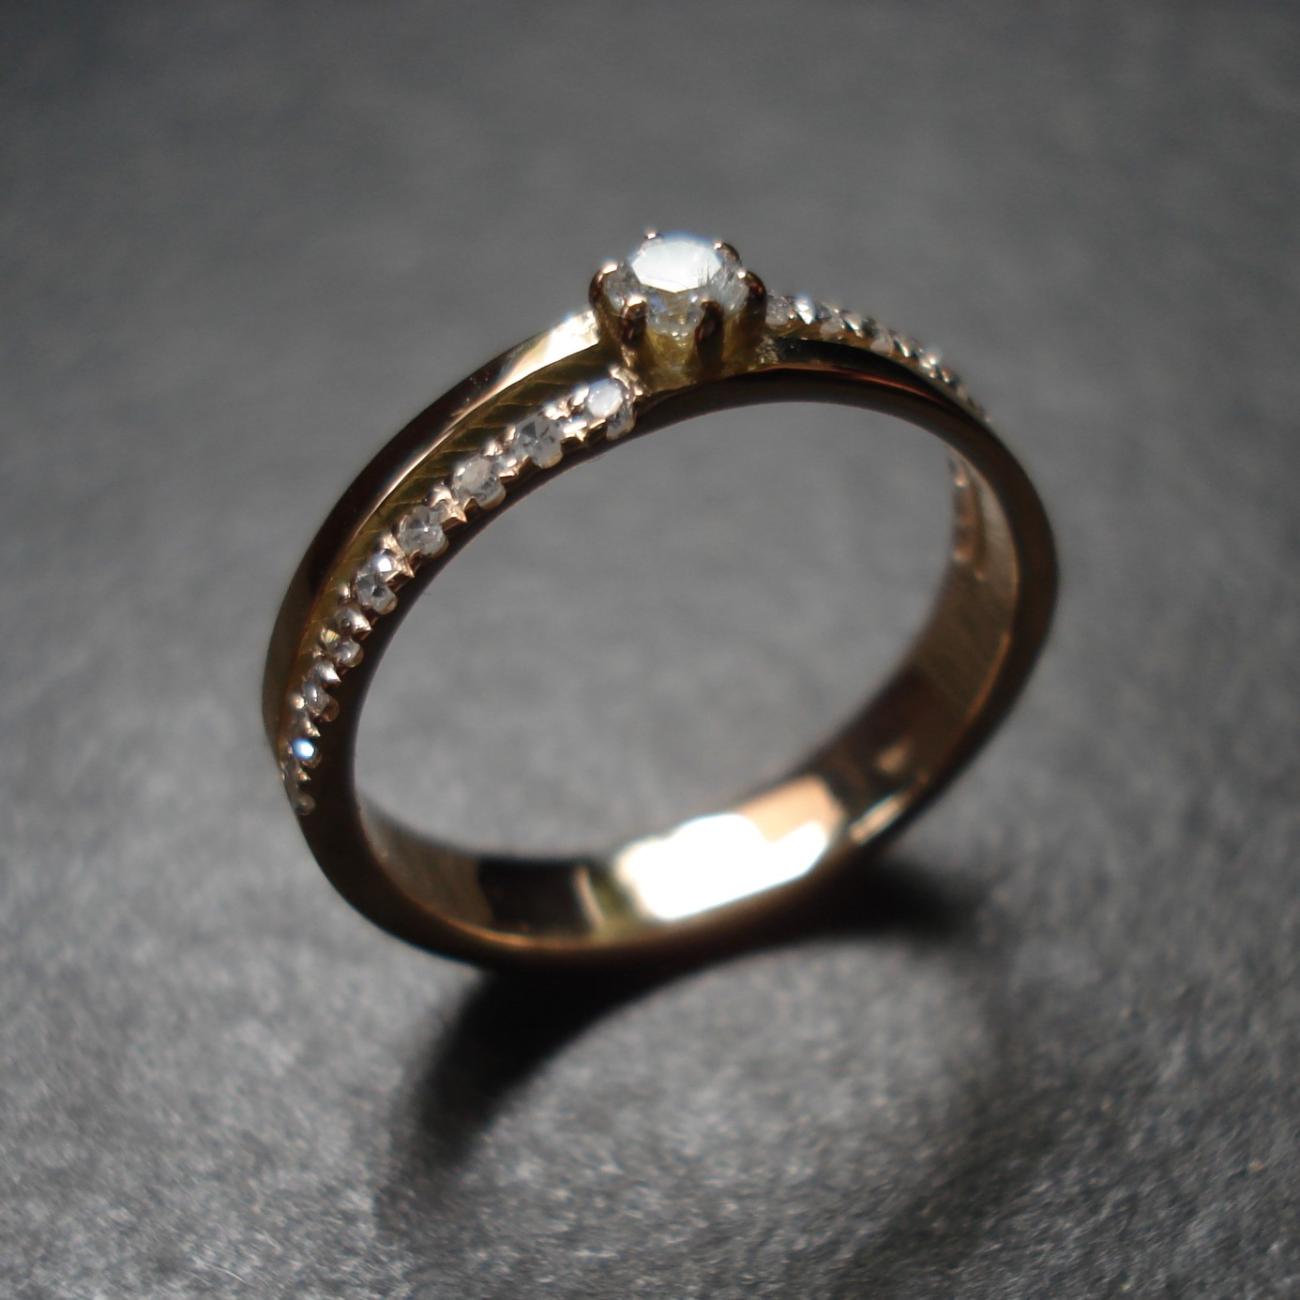 De diamanten en oud goud van de klant zijn de items voor het ontwerpen van deze ring De ring is opgebouwd uit 2 ringen, één in Rosé Goud en de andere in Geel Goud.  De grotere diamant houdt de twee ringen bovenaan samen. Elk van de twee ringen heeft een kasteelzetting van 9 diamantjes.  